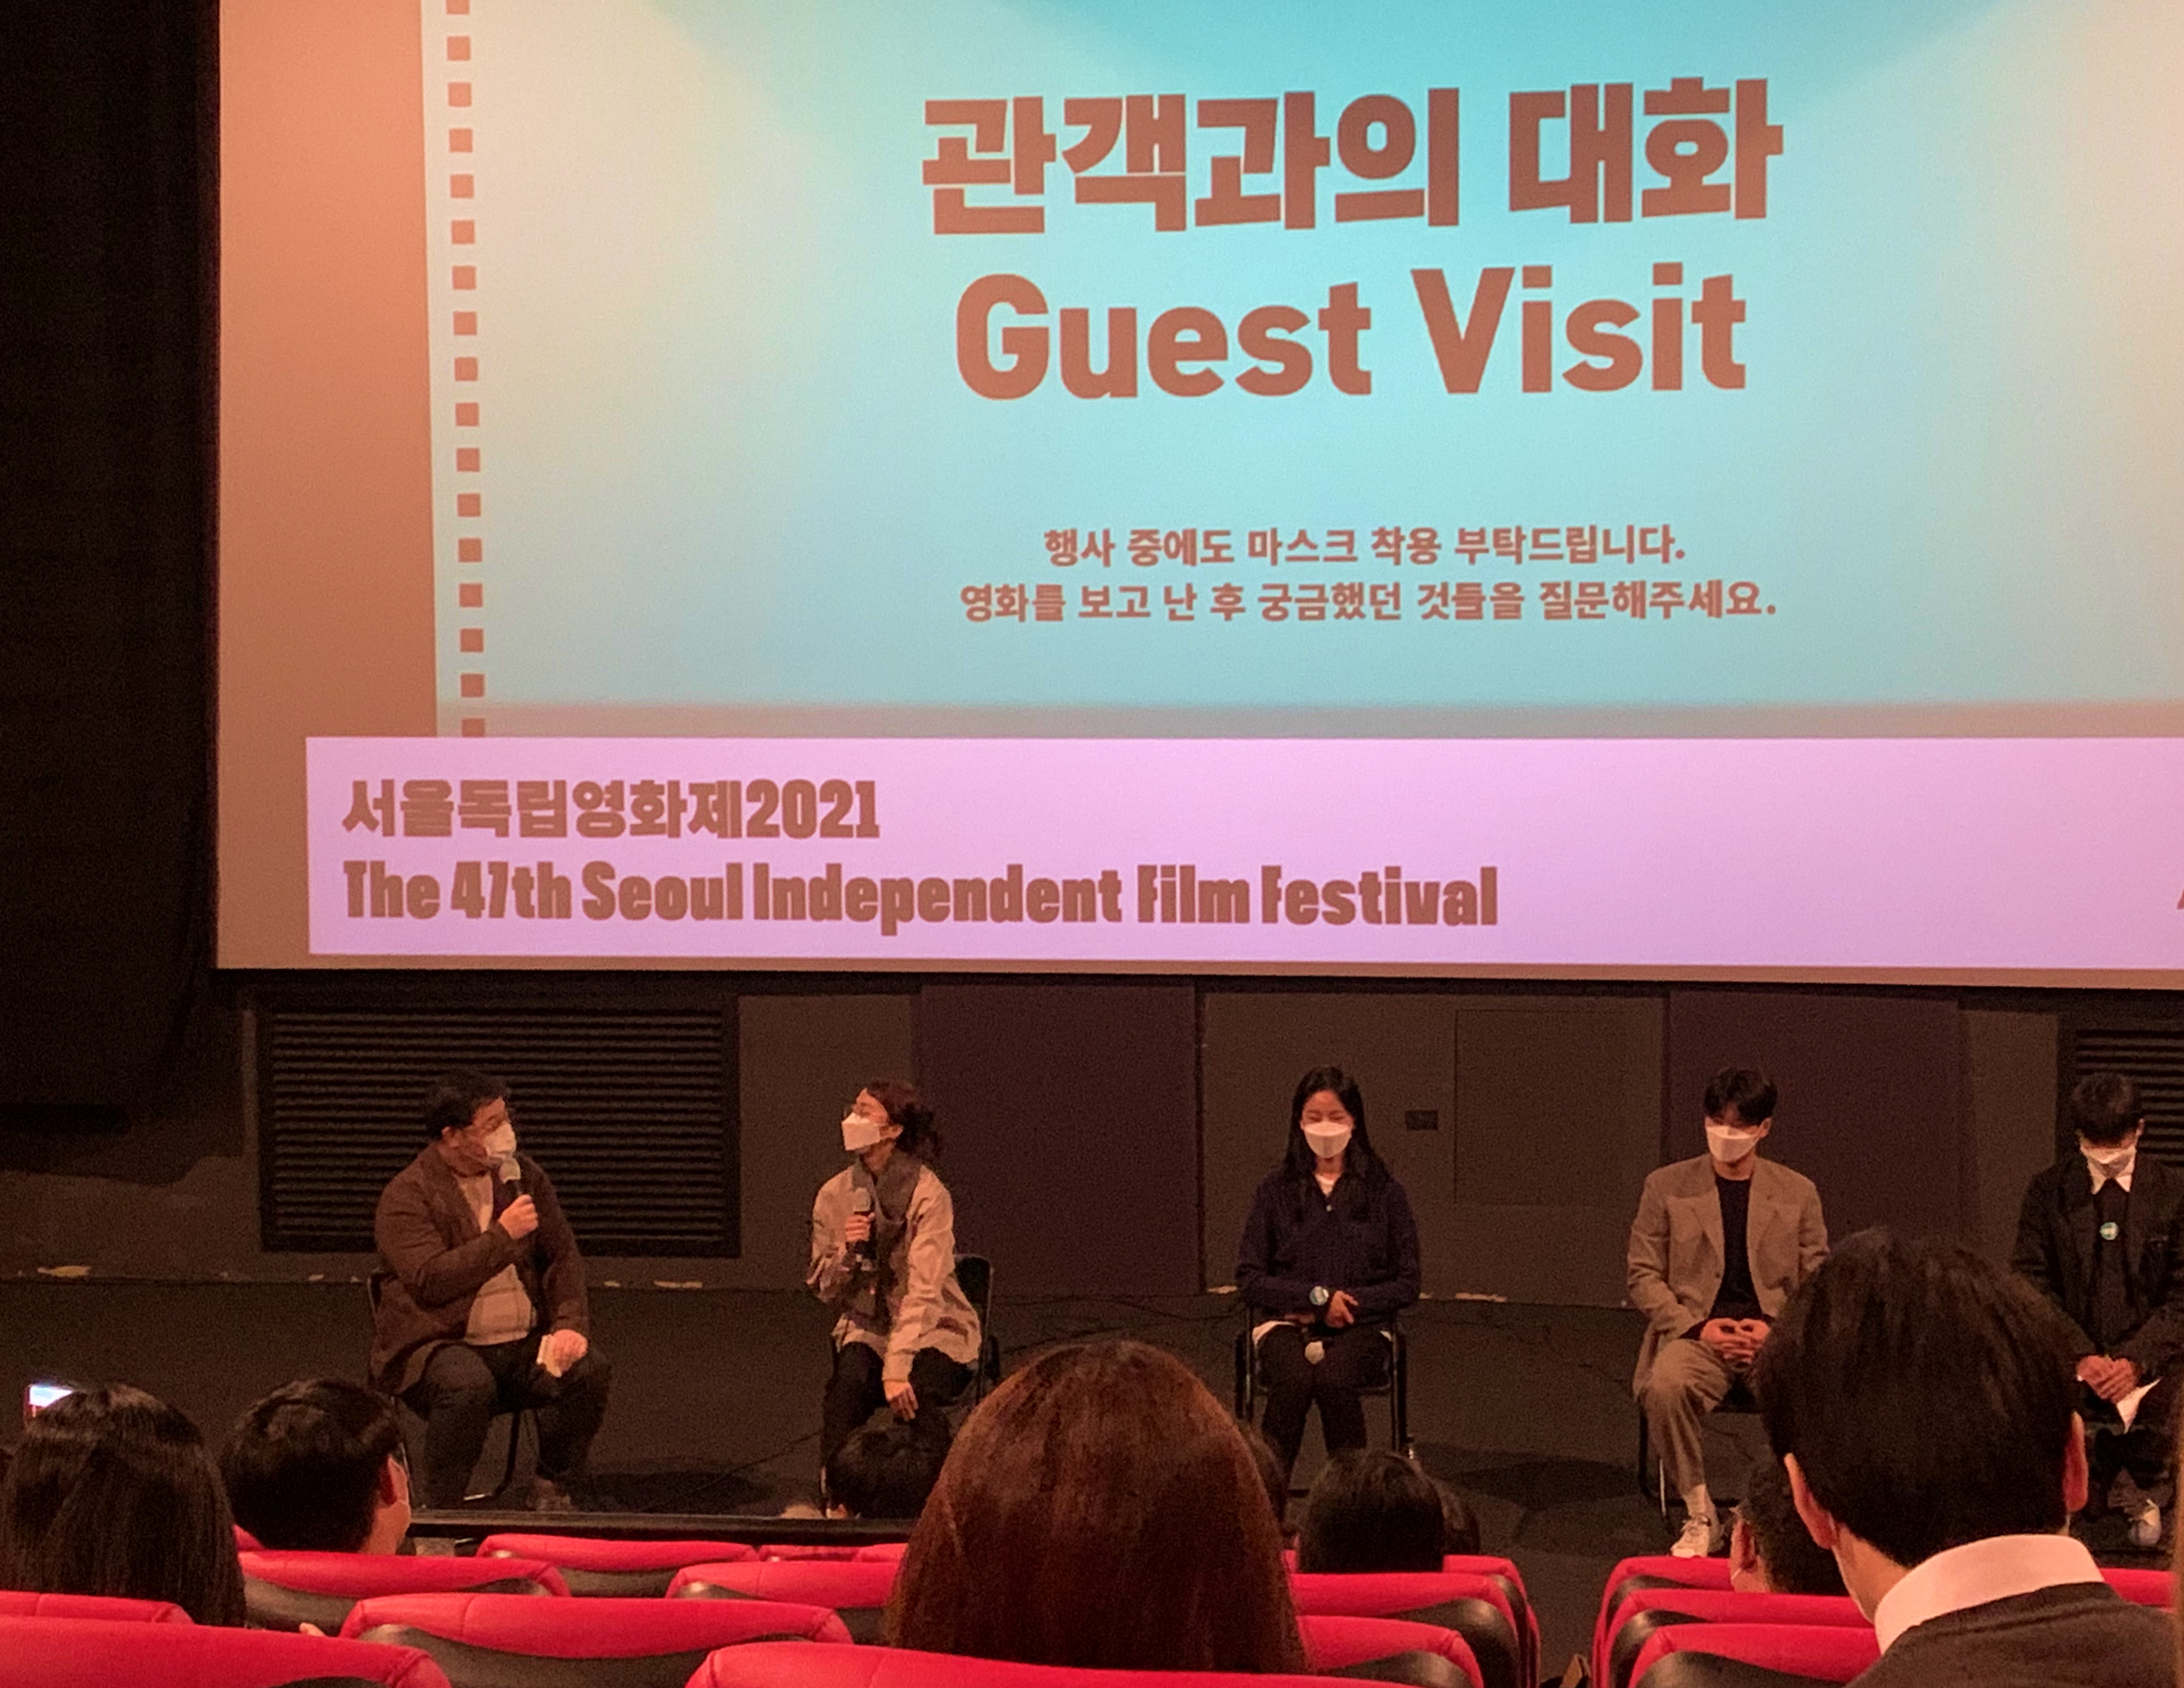 <만인의 연인> 감독님 & 주연배우 3인이 참석한 GV. 재미있는 질문이 많았습니다!